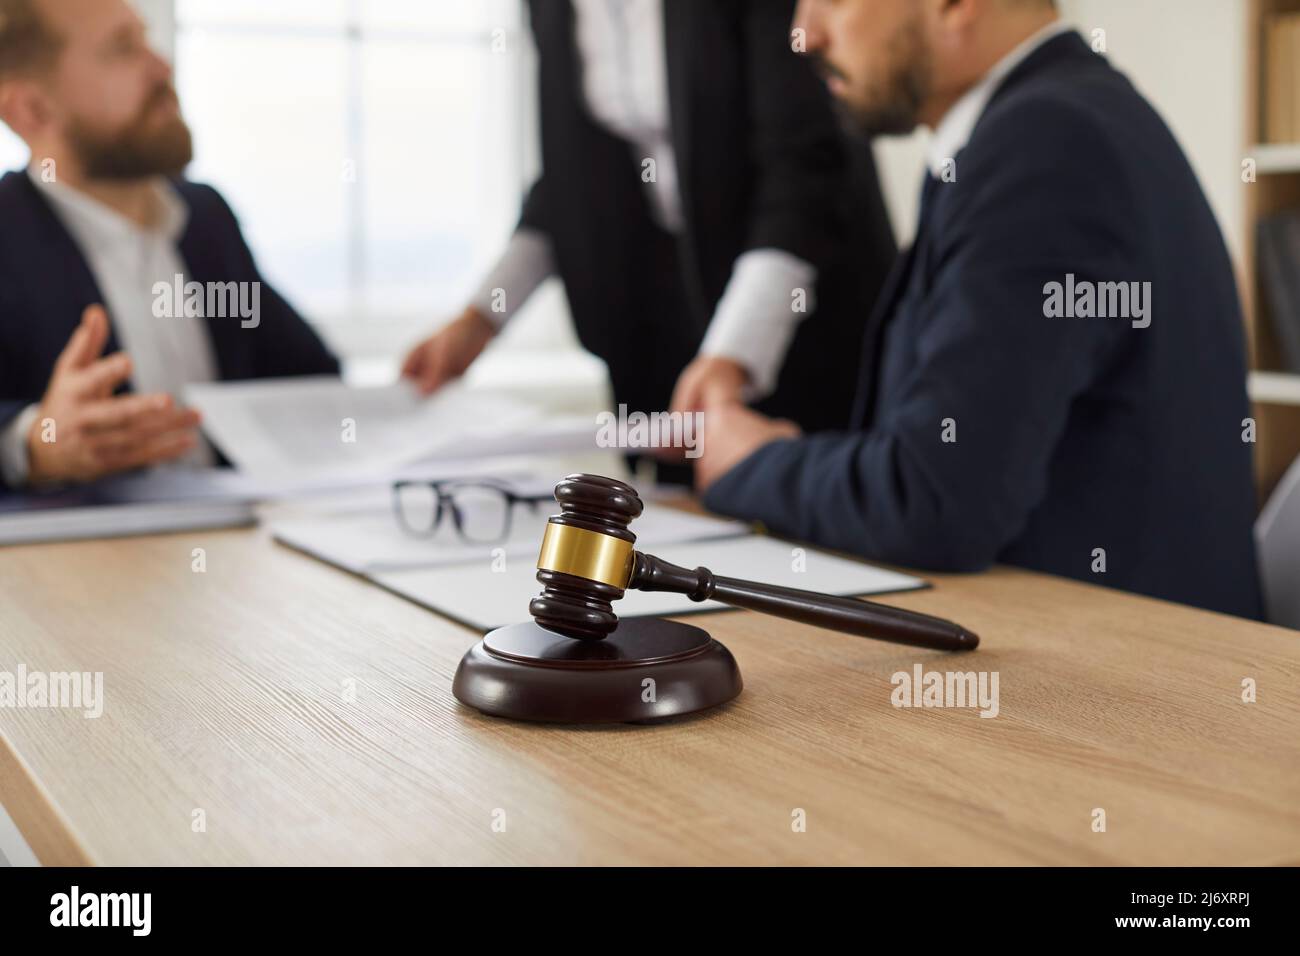 Le gavel du juge sur une table en bois, et les personnes qui travaillent avec des documents en arrière-plan Banque D'Images